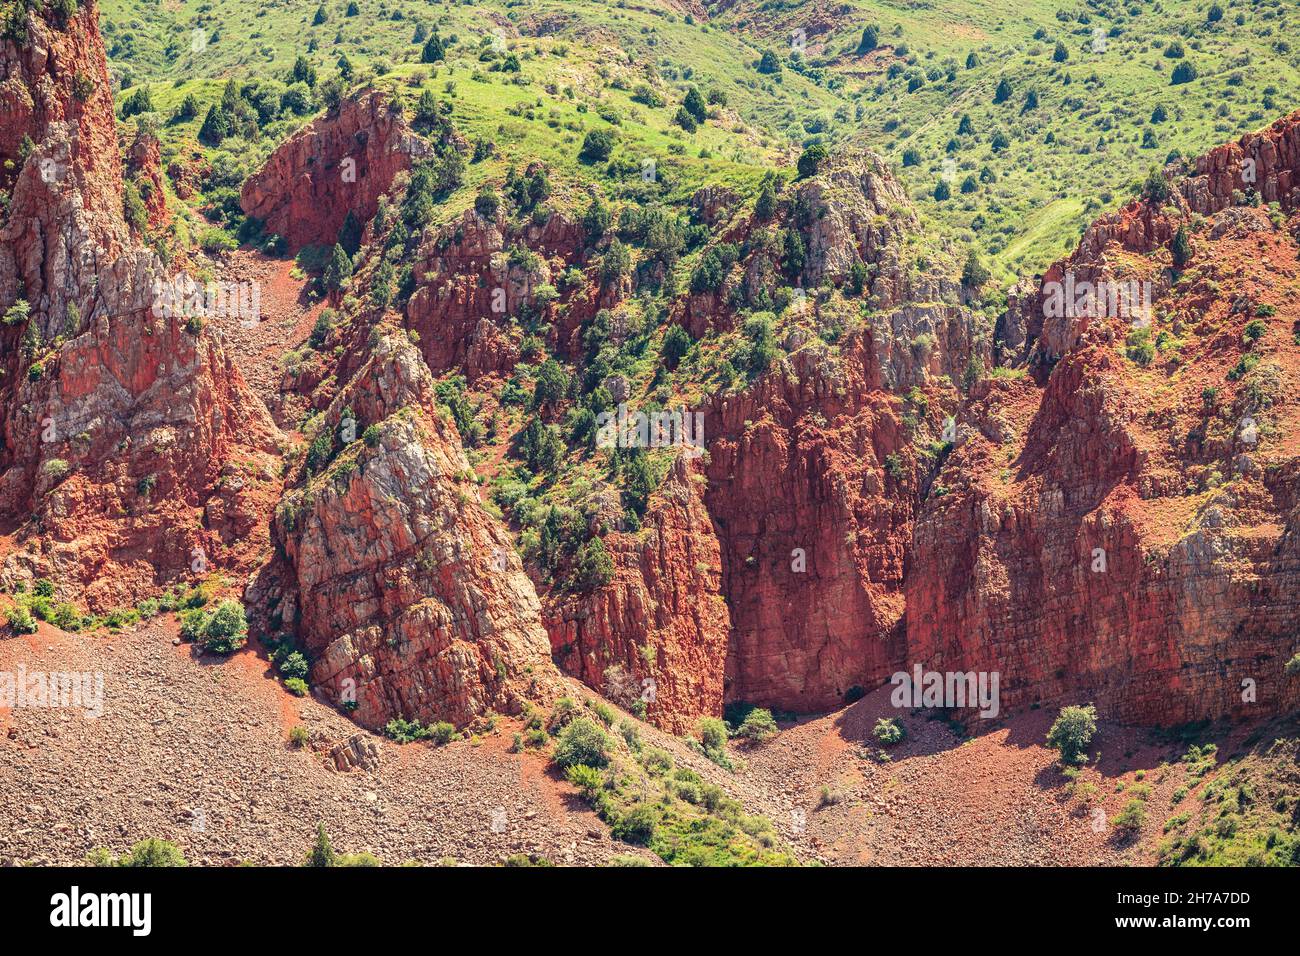 Las famosas rocas rojas cerca del monasterio de Noravank en Armenia con un alto contenido de hierro que determina este color Foto de stock